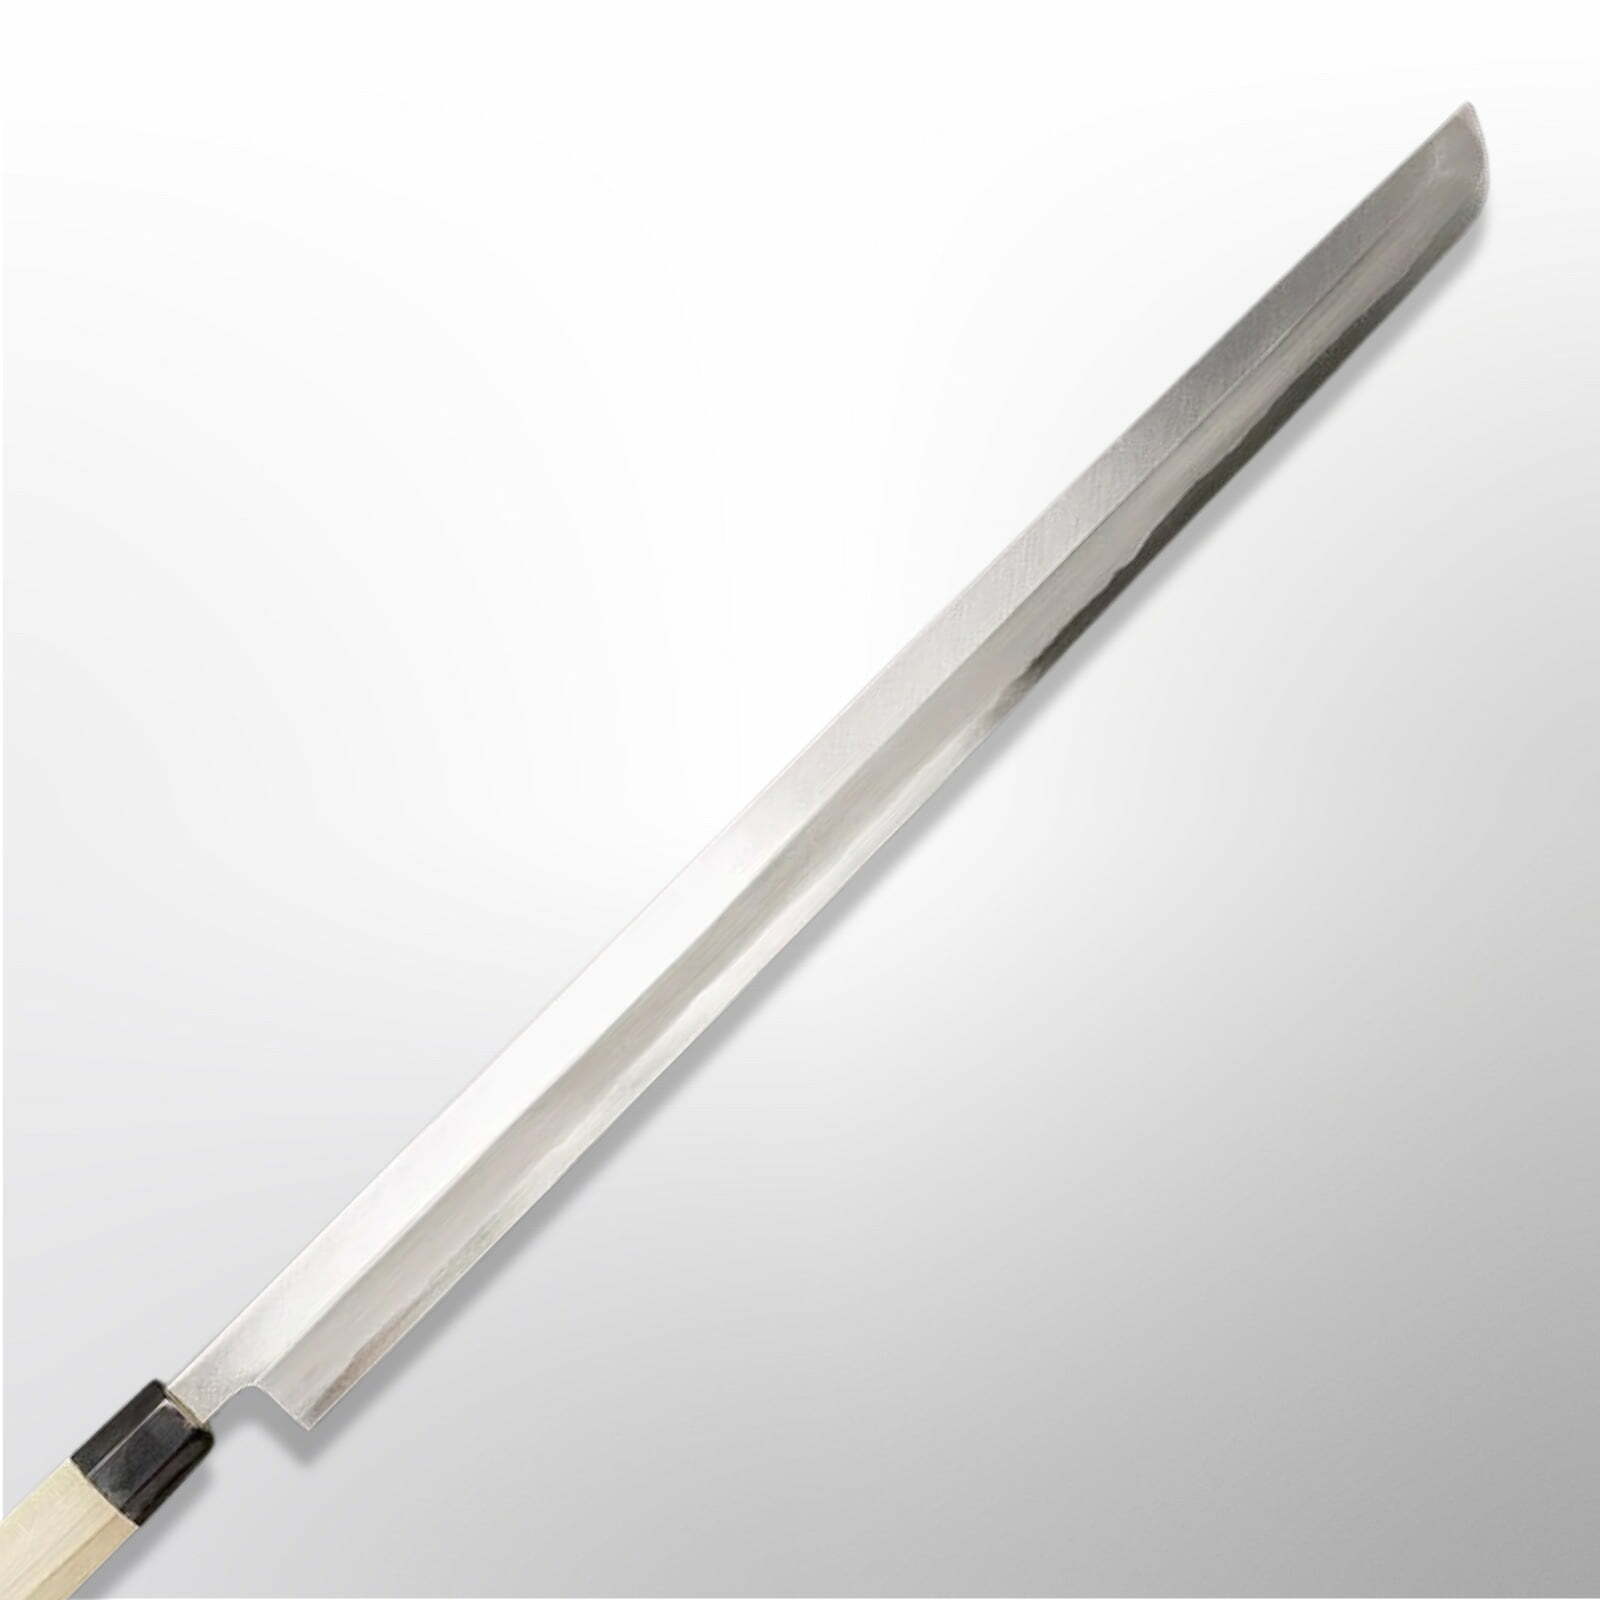 סכין מגורו-קירי 450מ״מ פלדת פחמן יפנית שירוגאמי 2 עטופה פלדת אל-חלד גימור מט מלוטש סאקאיי טקיוקי יפן SKTAKAYU03181